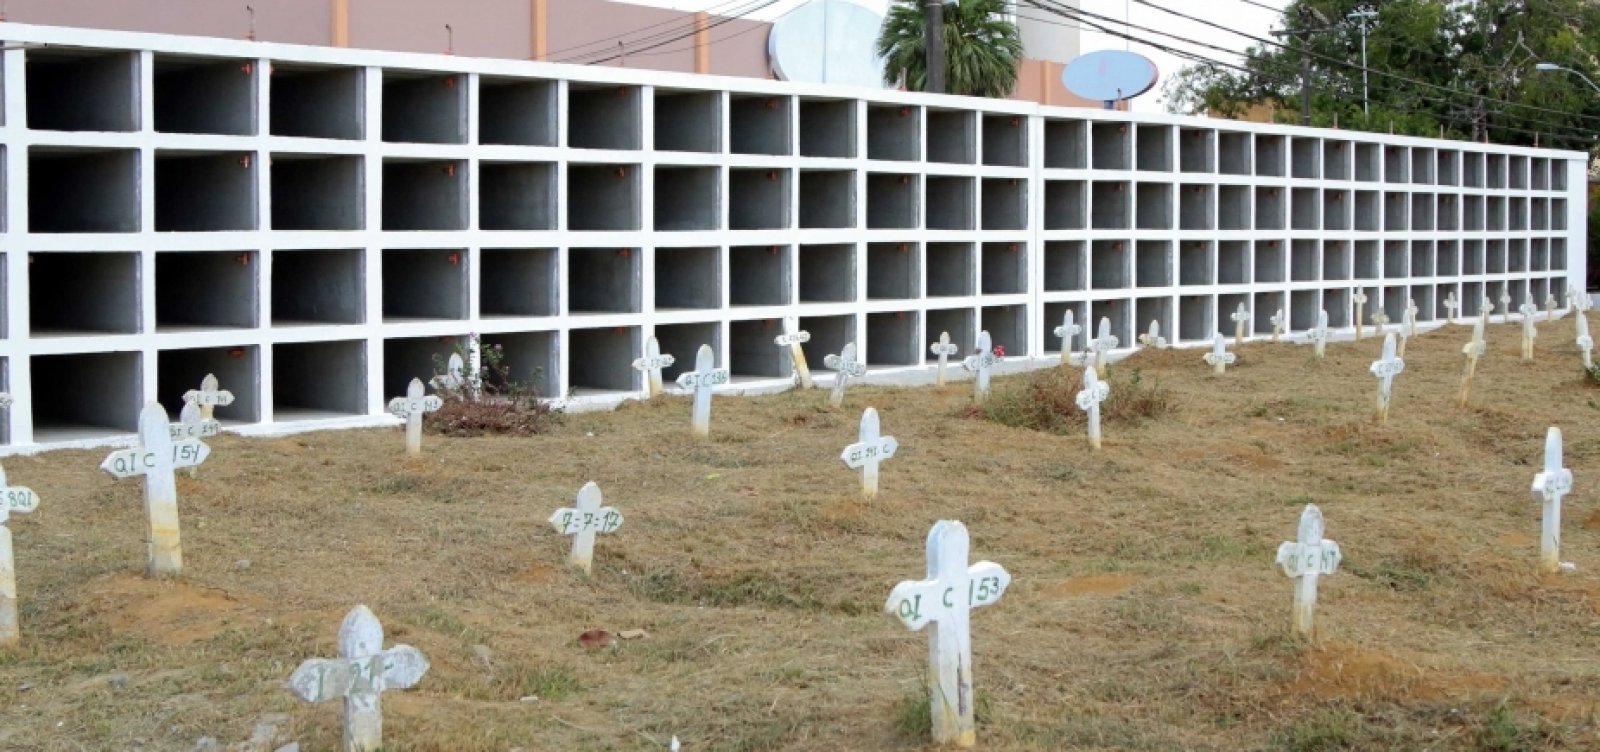 Cemitérios públicos de Salvador têm aumento de 10% em enterros ...